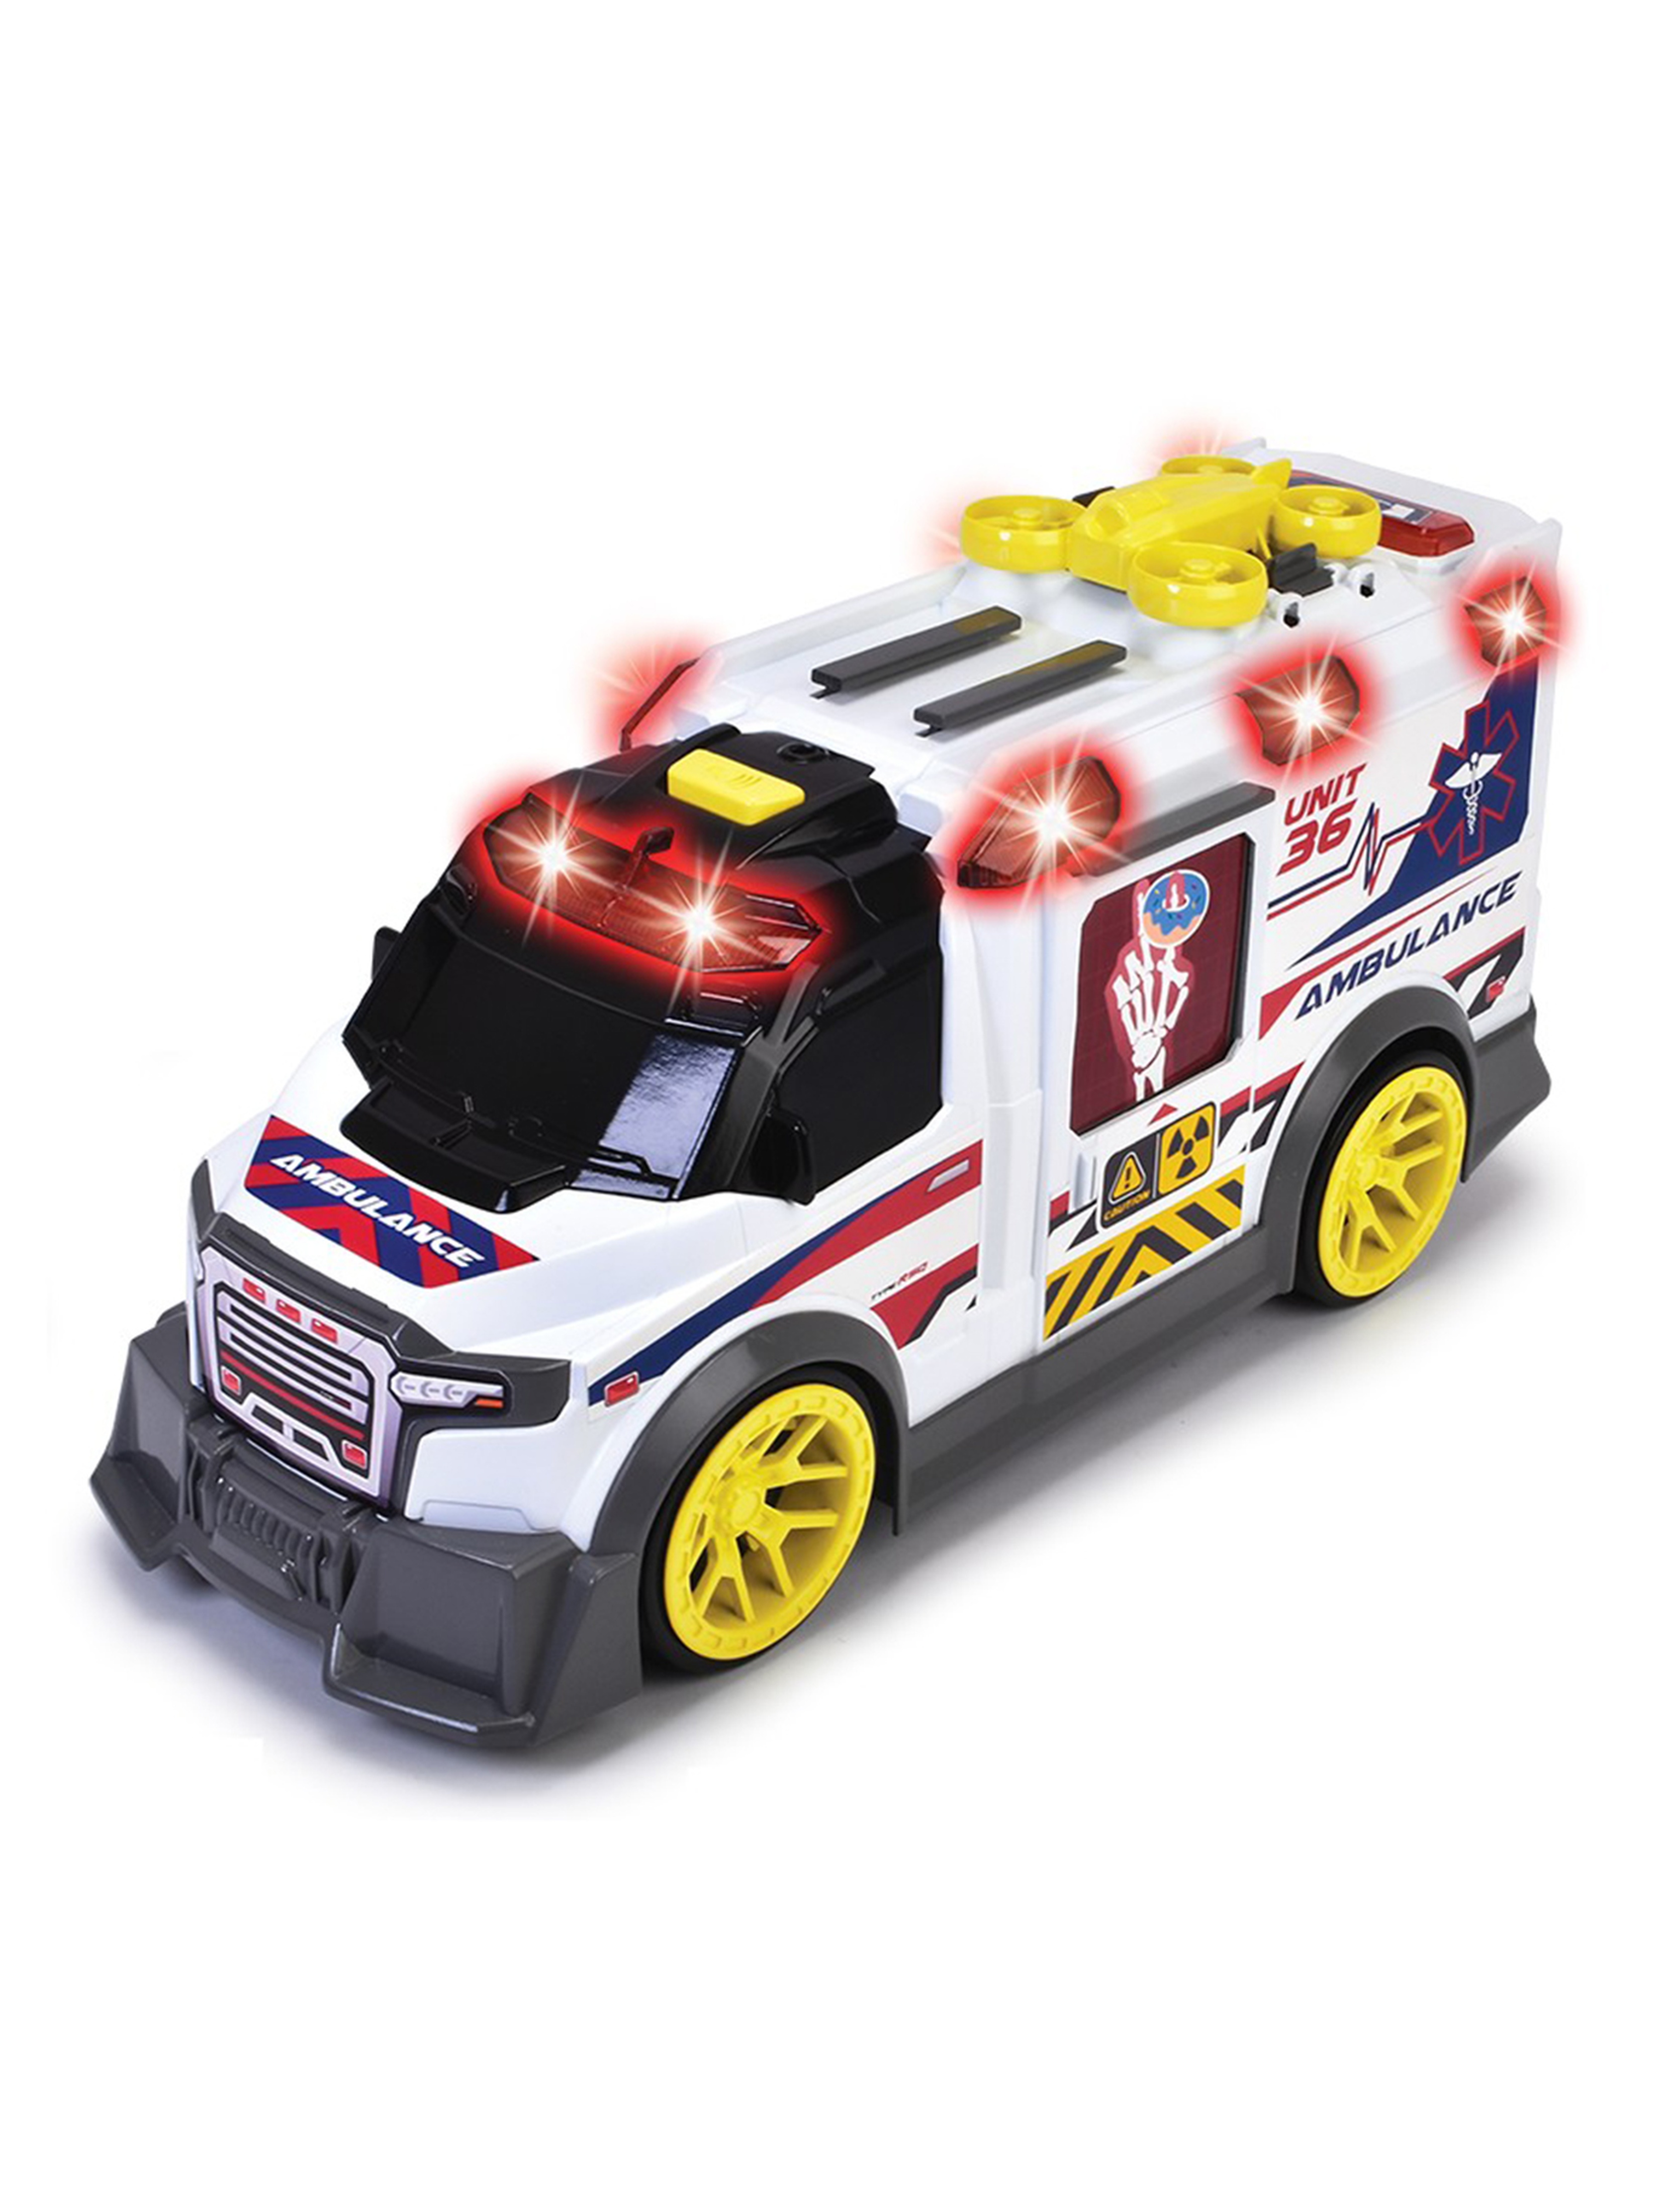 Pojazd Ambulans 35,5 cm